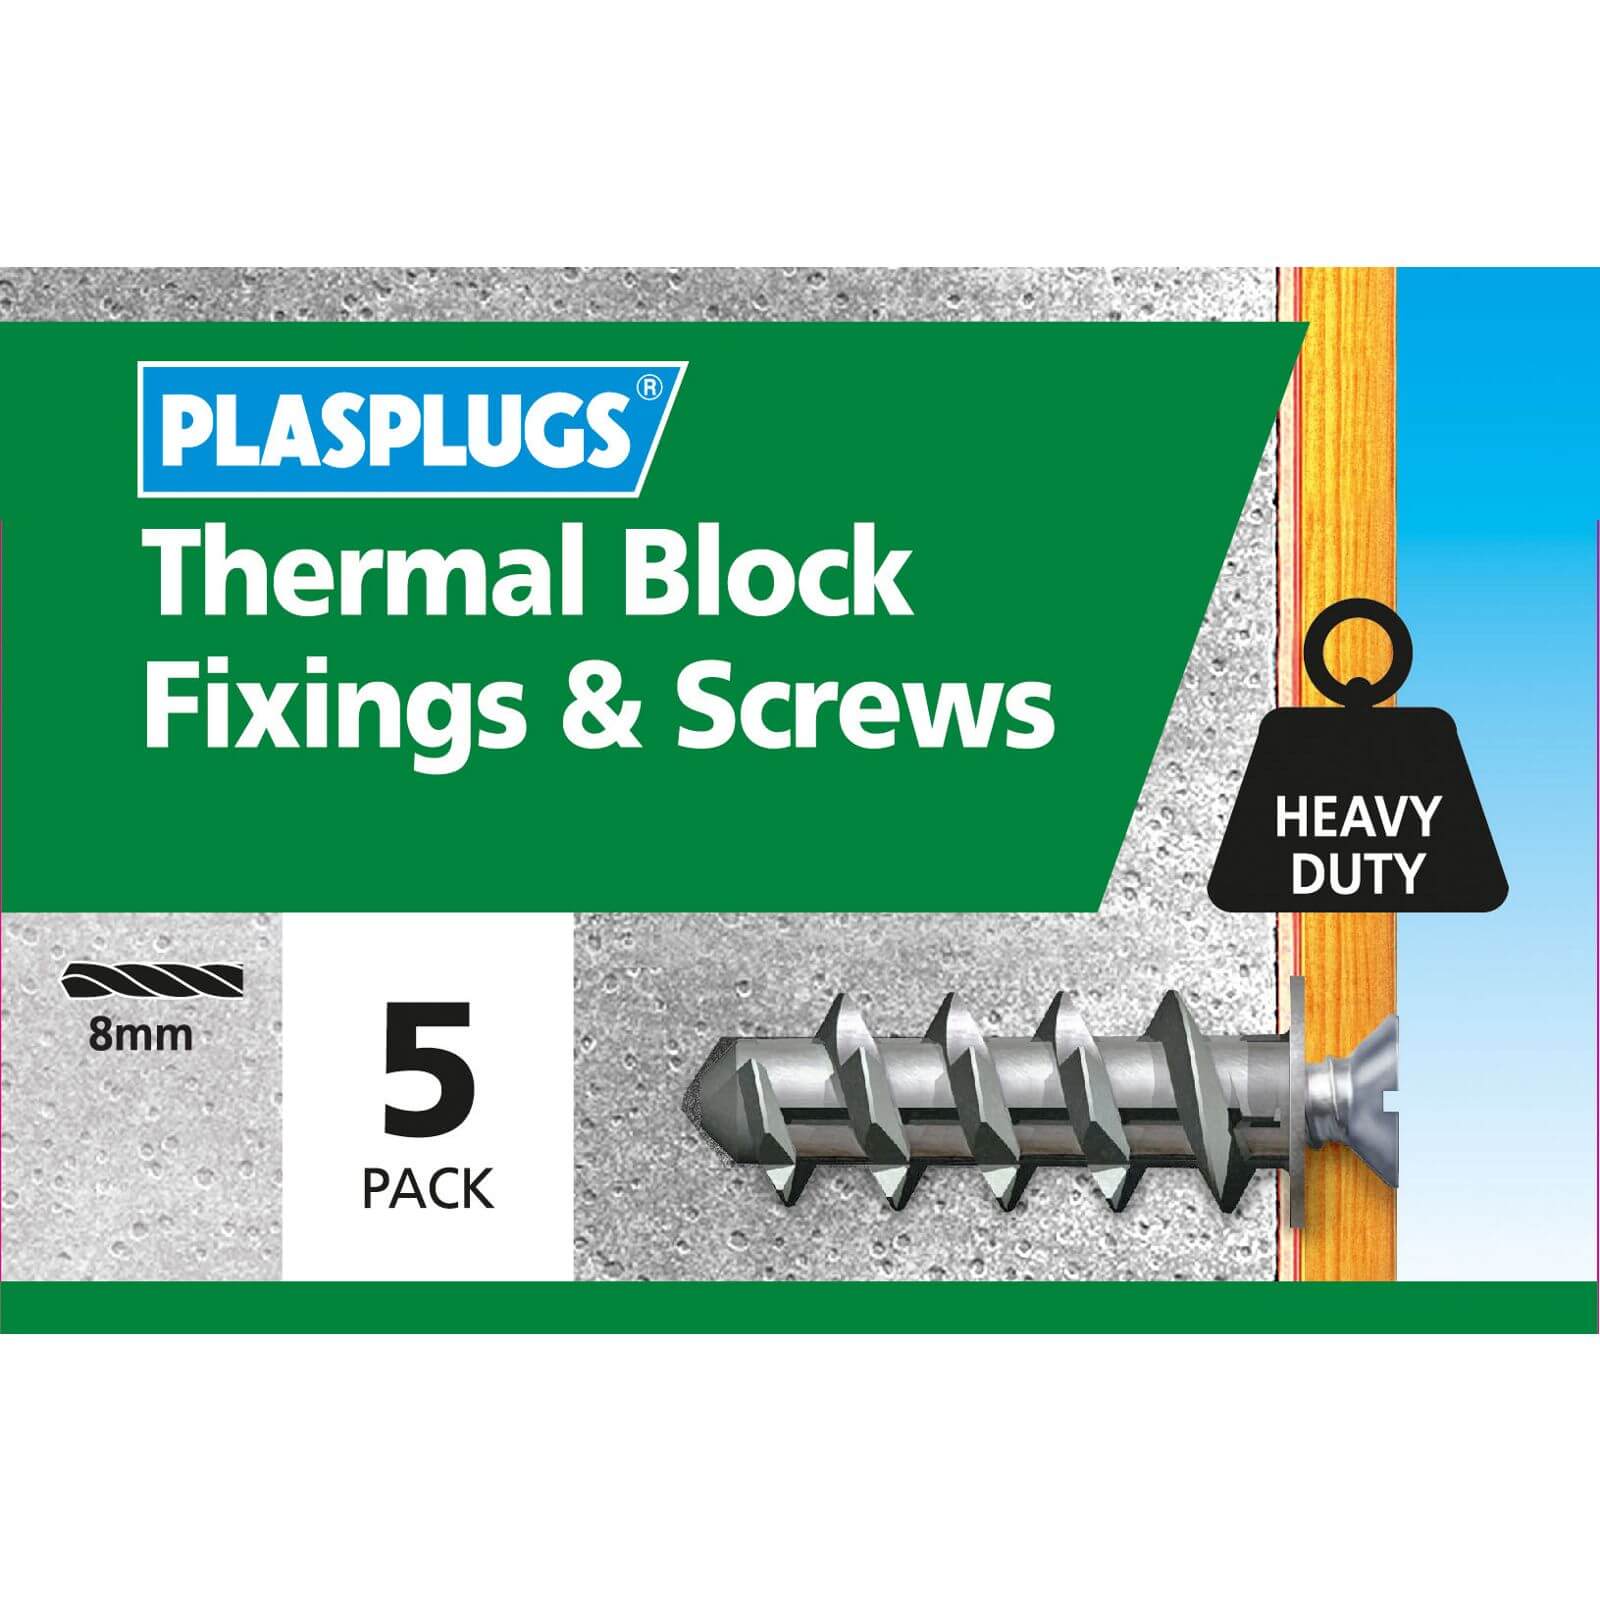 Plasplugs Thermal Block & Screws